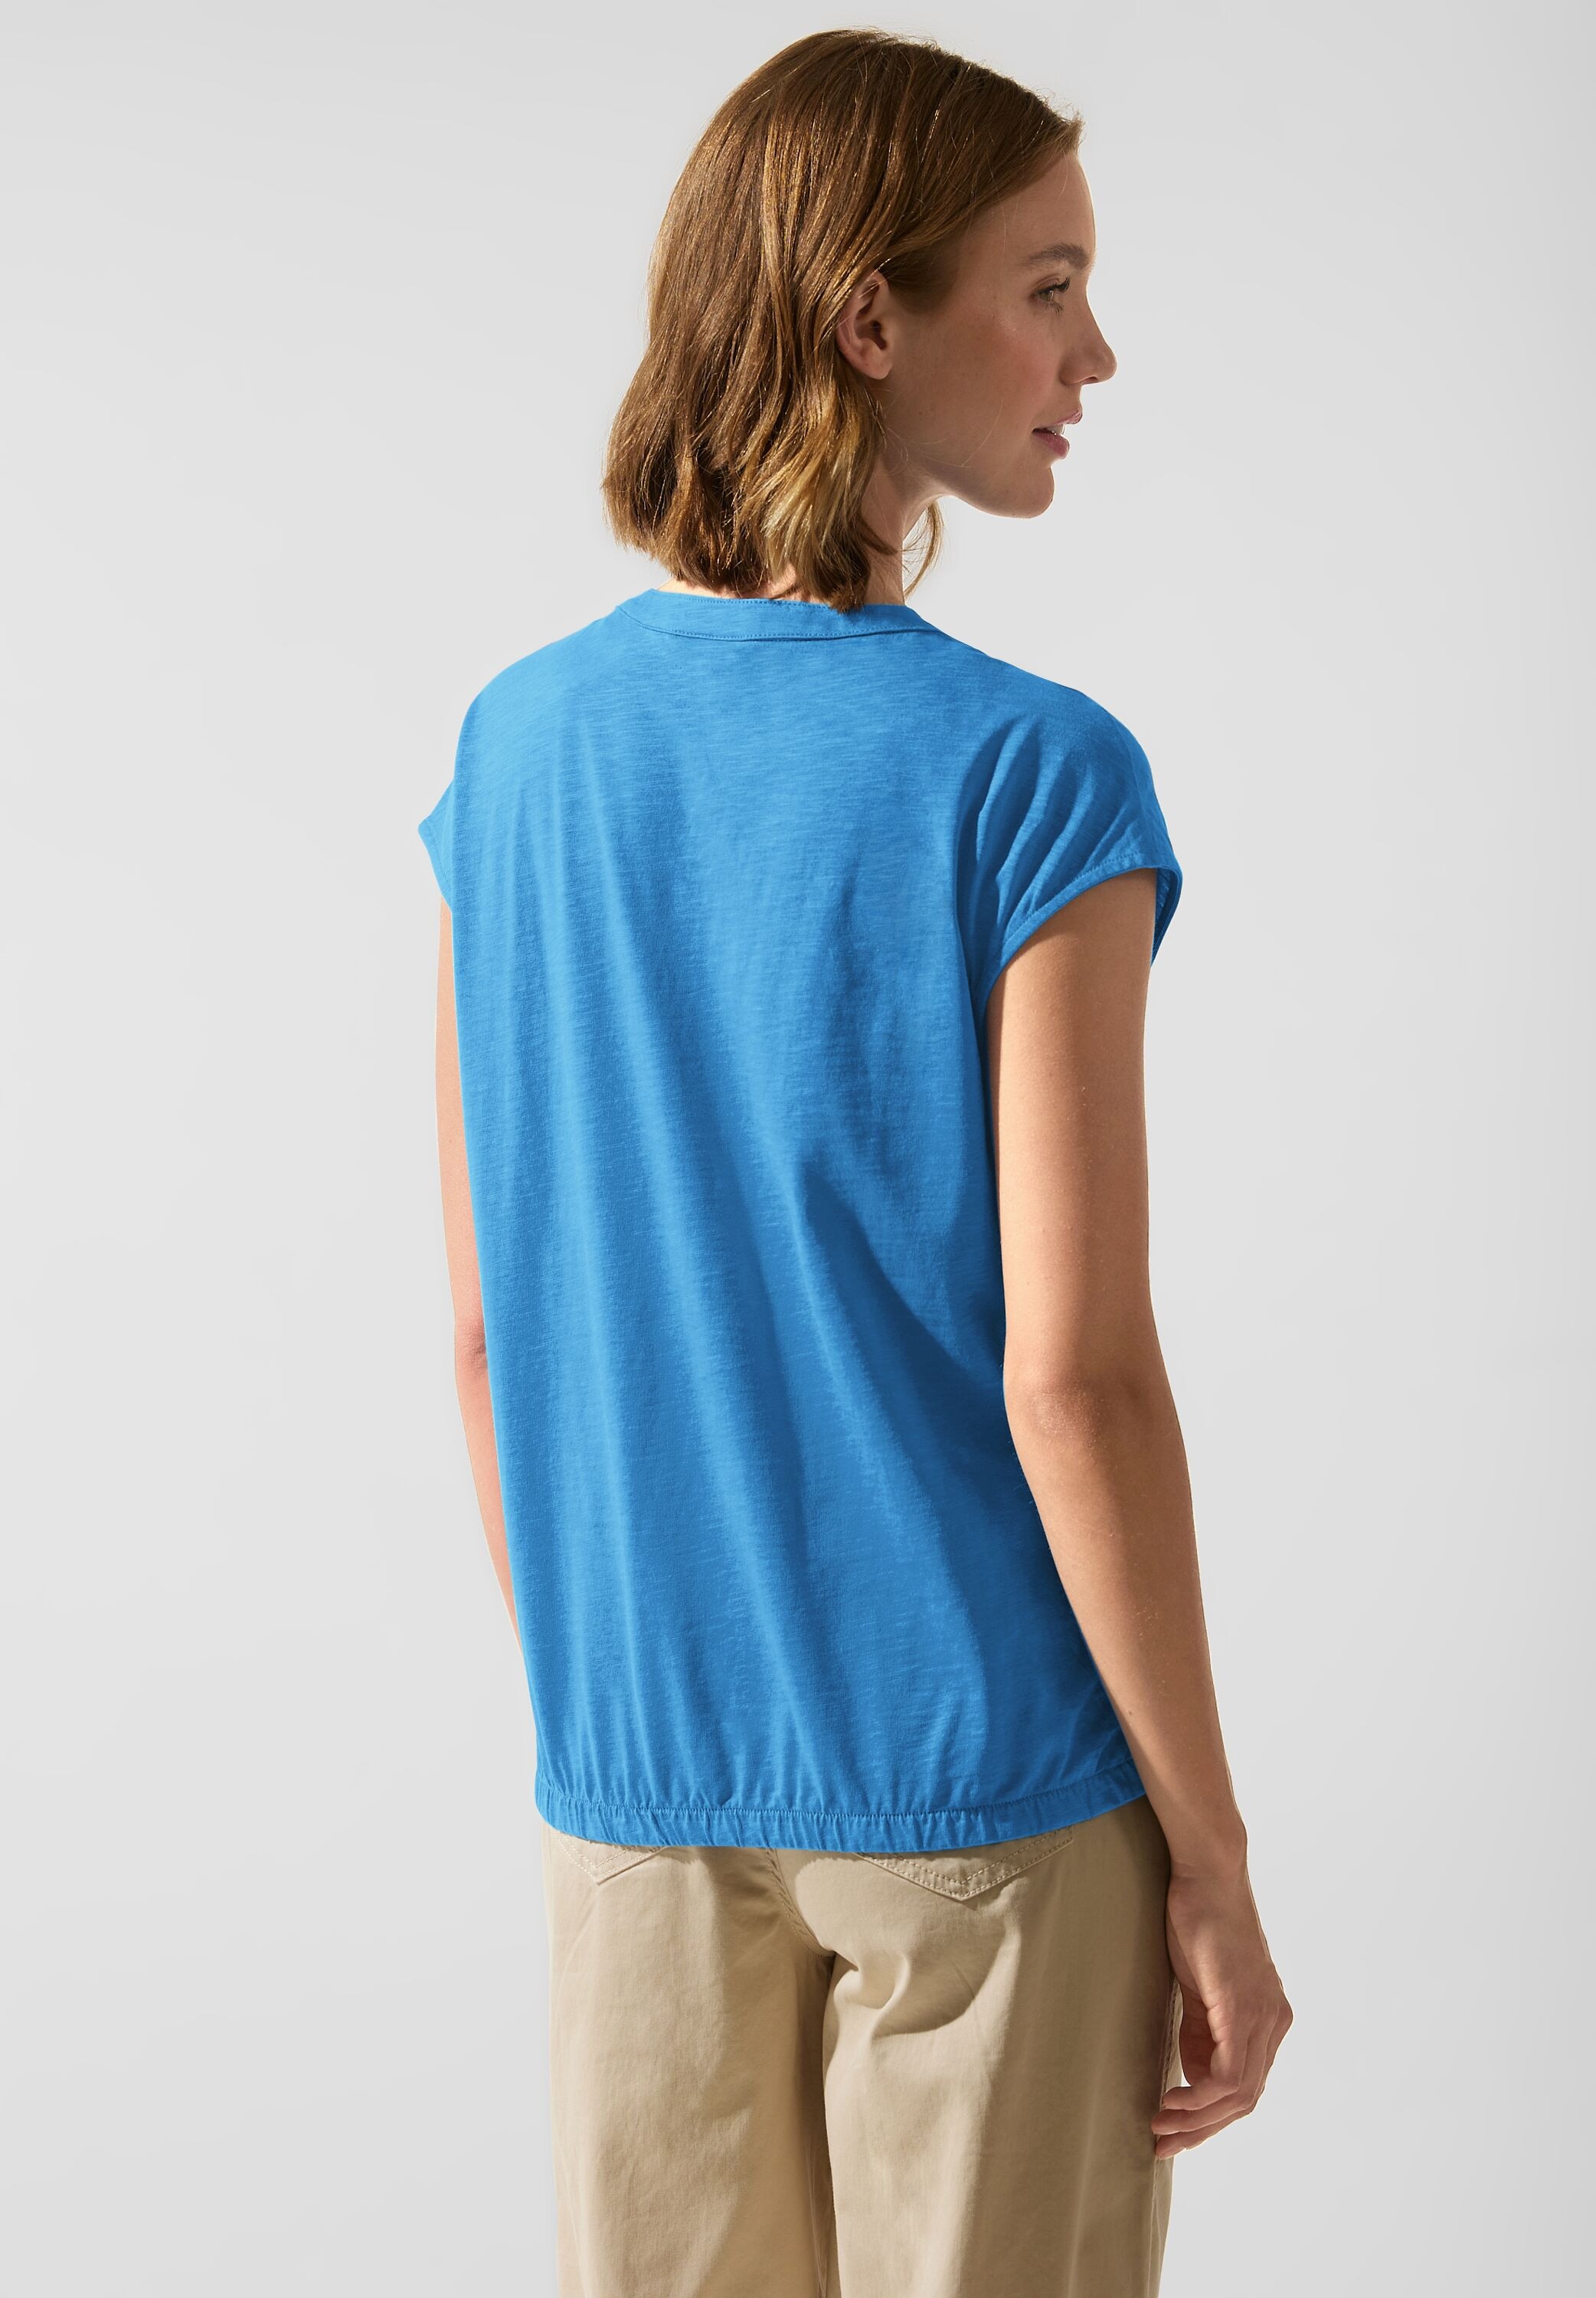 kaufen in online | Unifarbe BAUR STREET T-Shirt, ONE